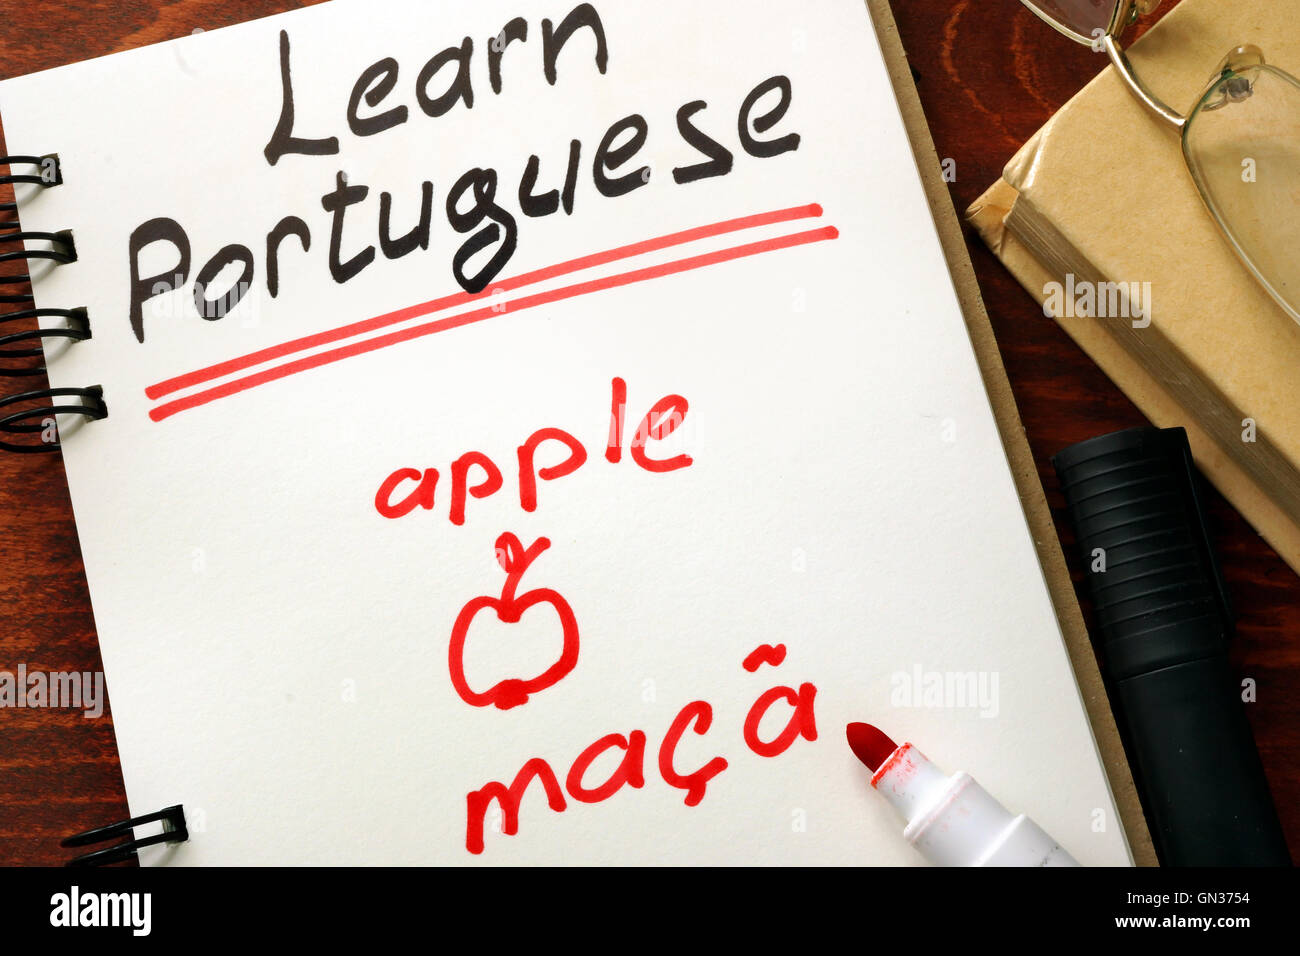 Apprendre le portugais écrit dans un bloc-notes. Concept de l'éducation. Banque D'Images